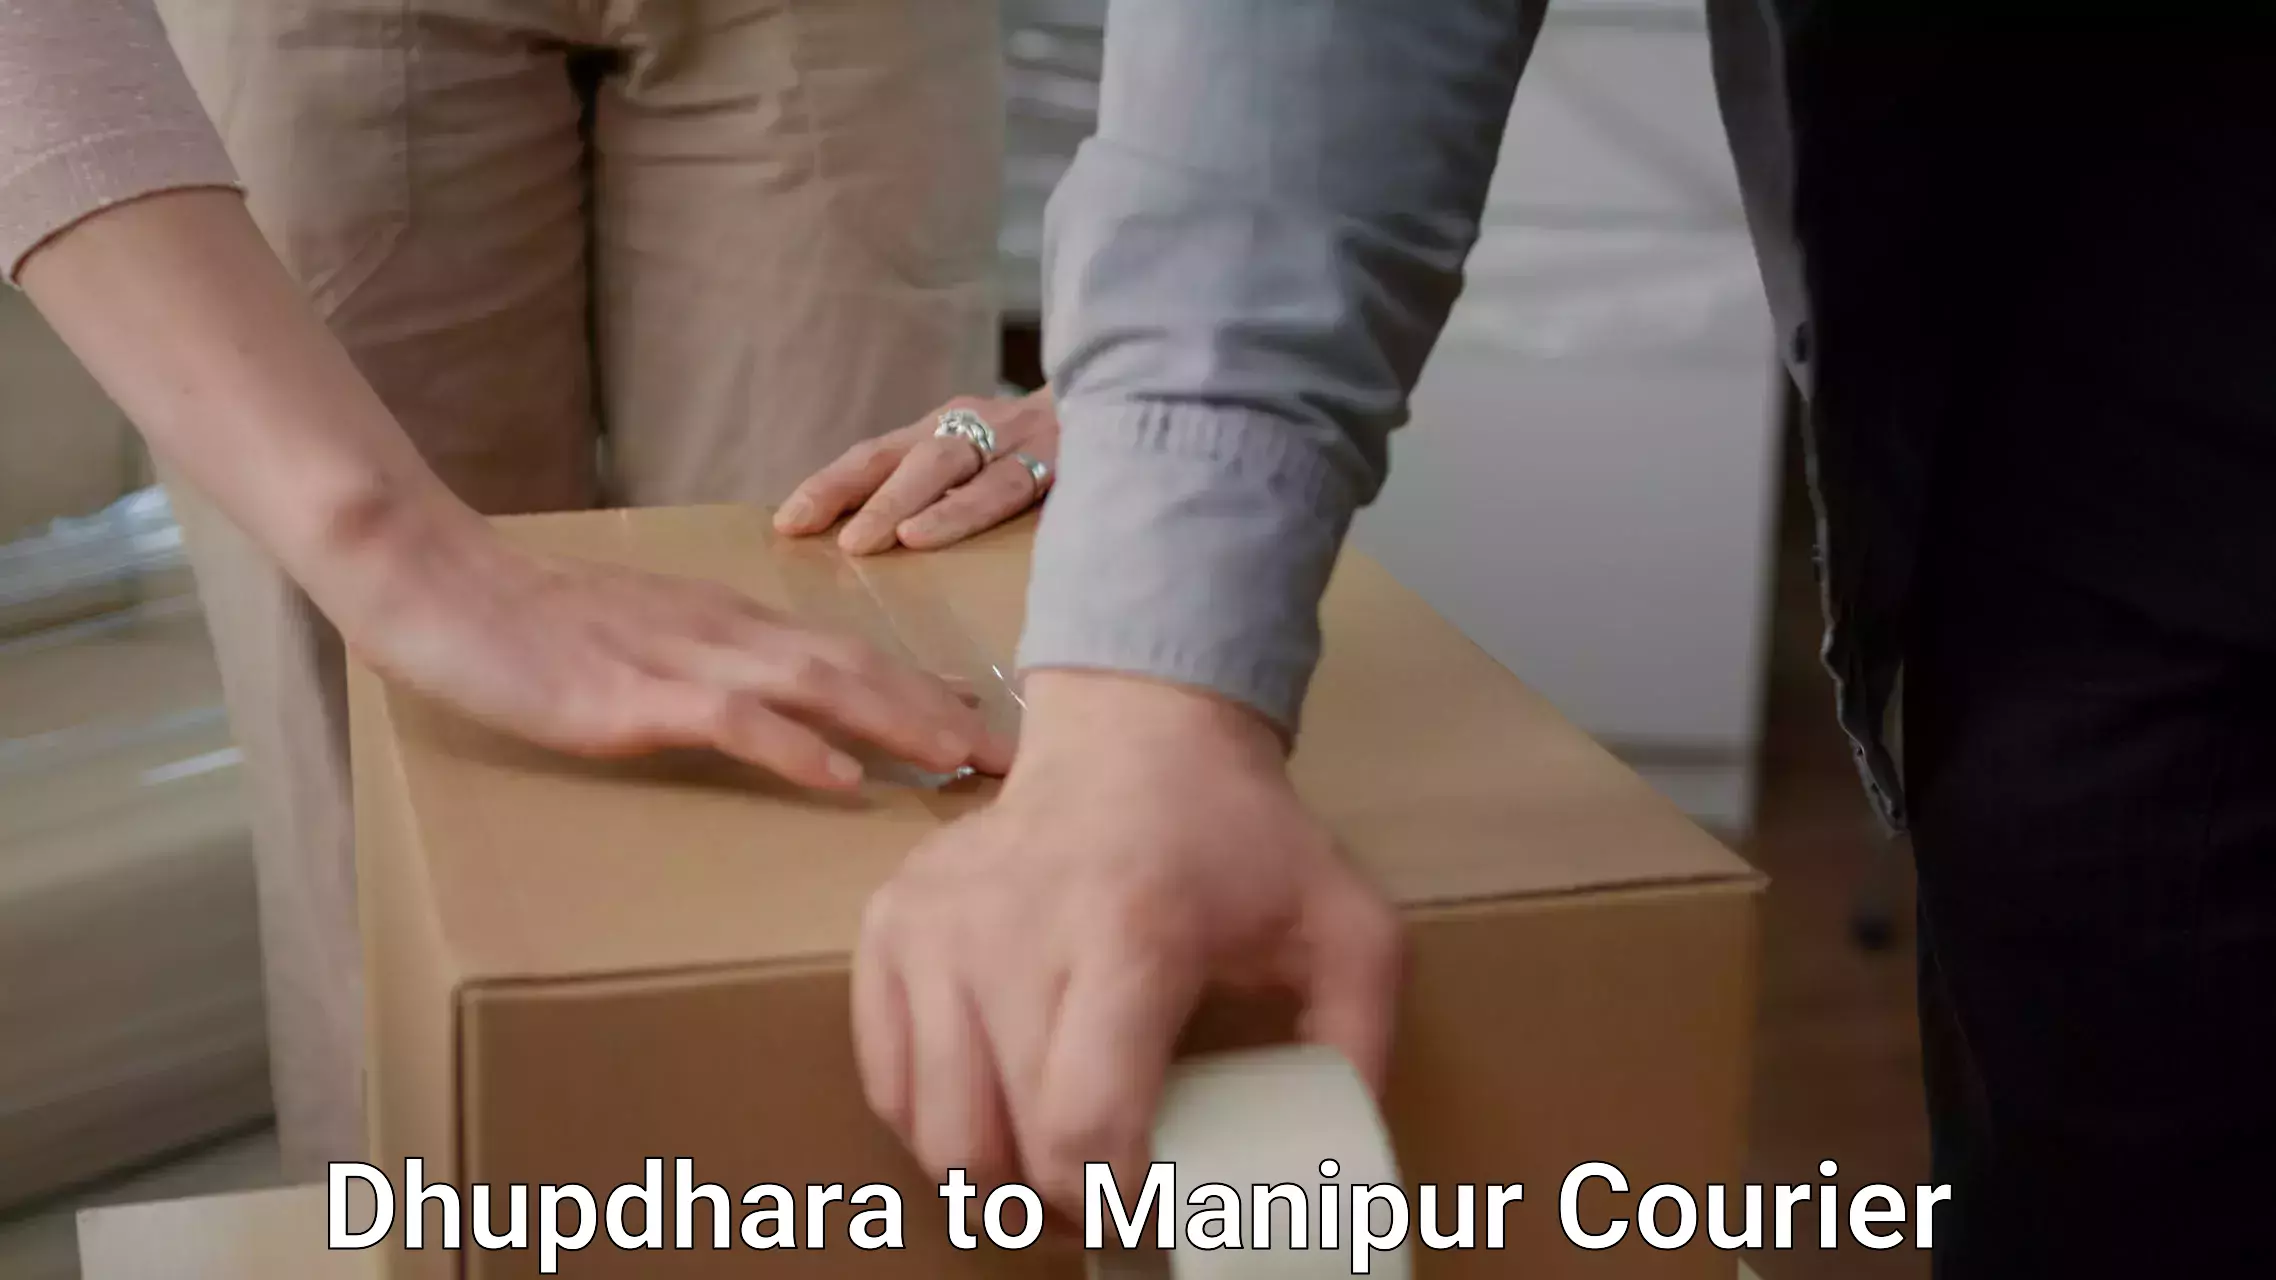 Furniture moving plans Dhupdhara to Manipur